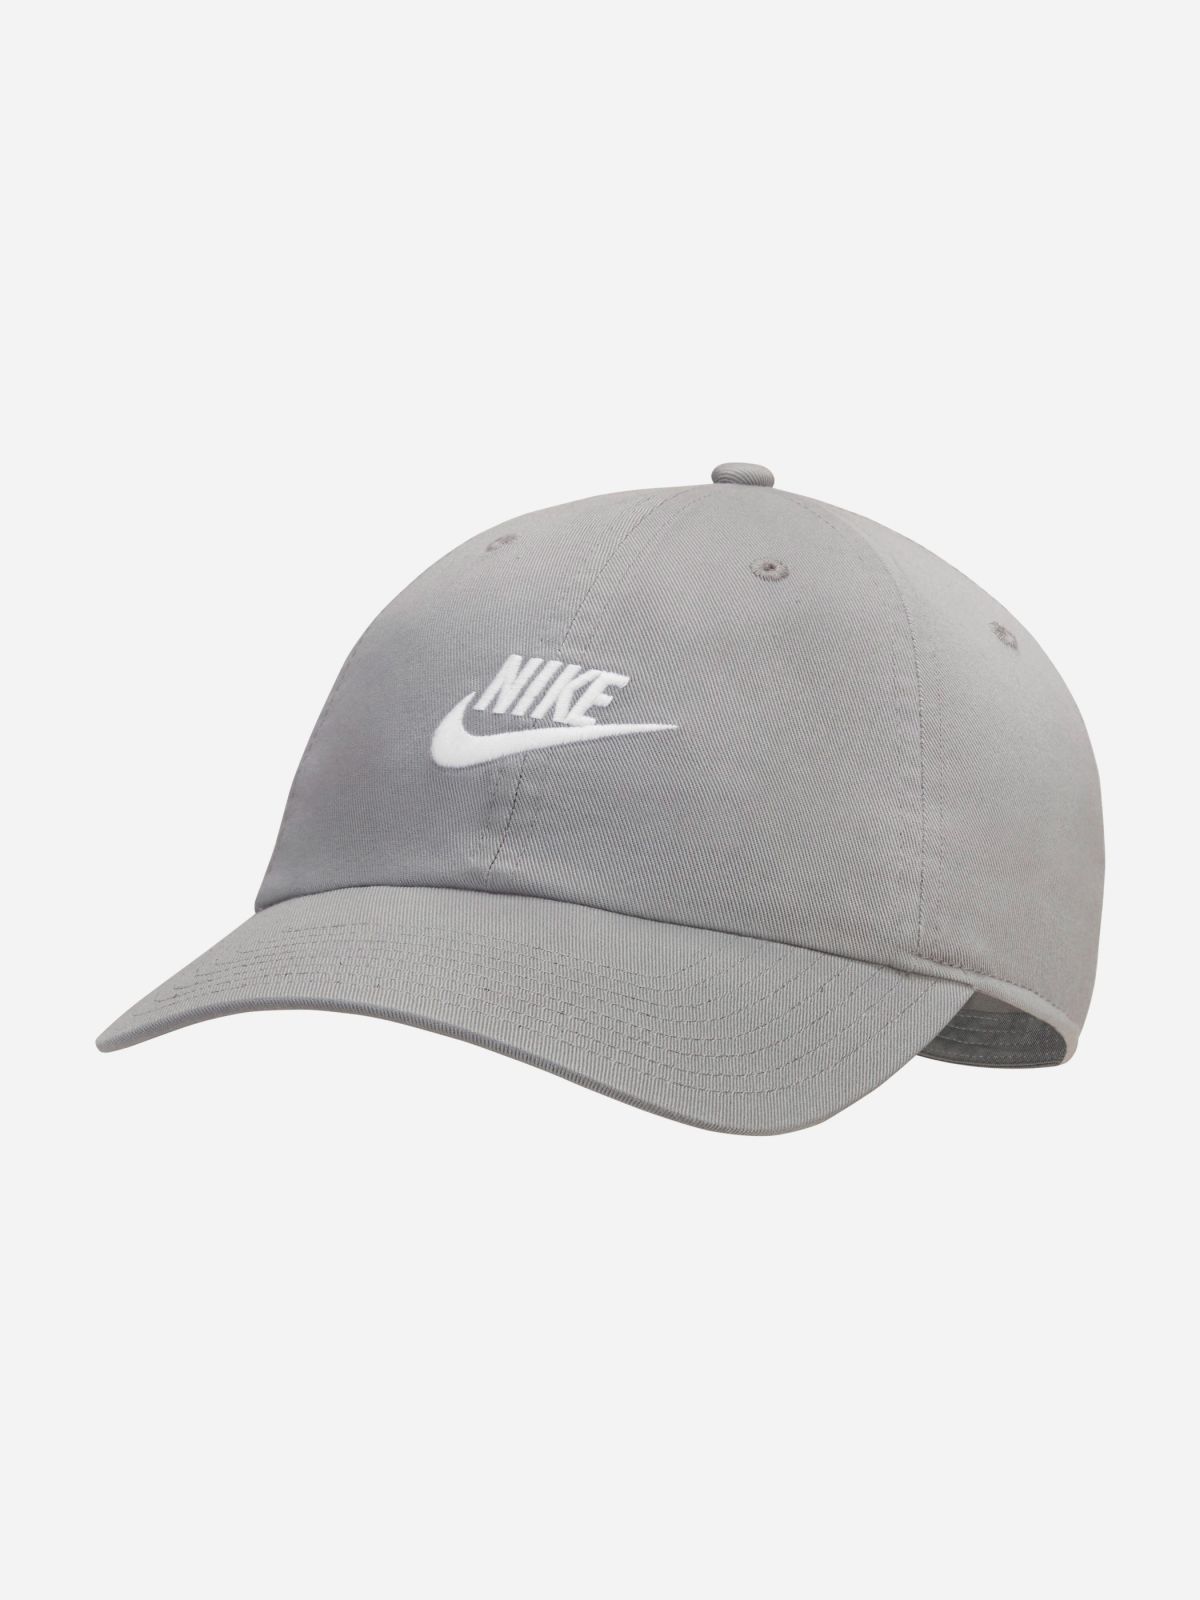  כובע מצחיה עם לוגו Heritage86 Futura Washed / גברים של NIKE